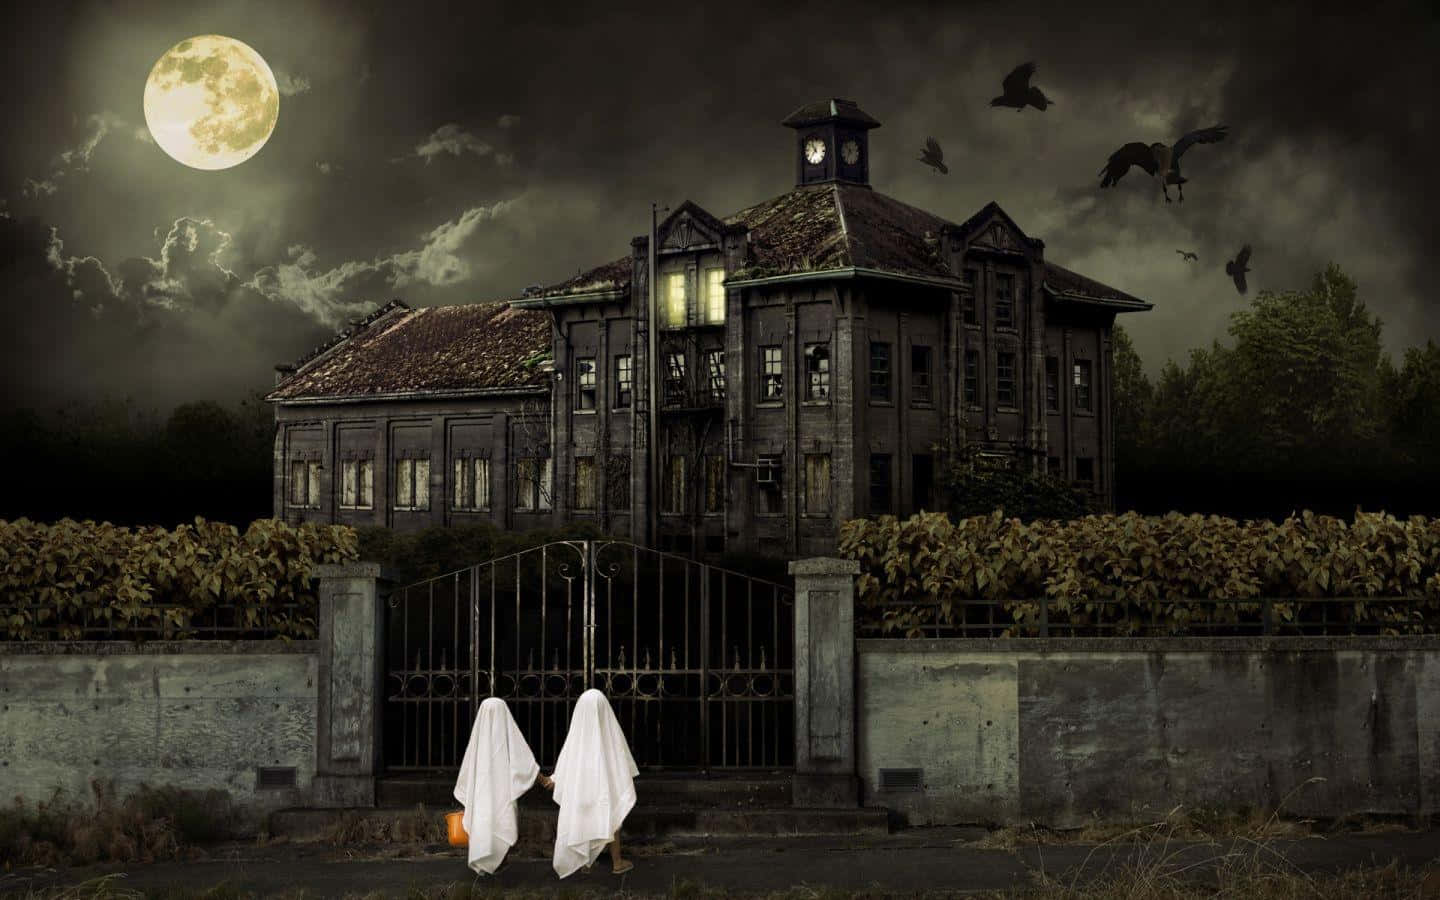 Spökenframför Ett Hus Med En Fullmåne